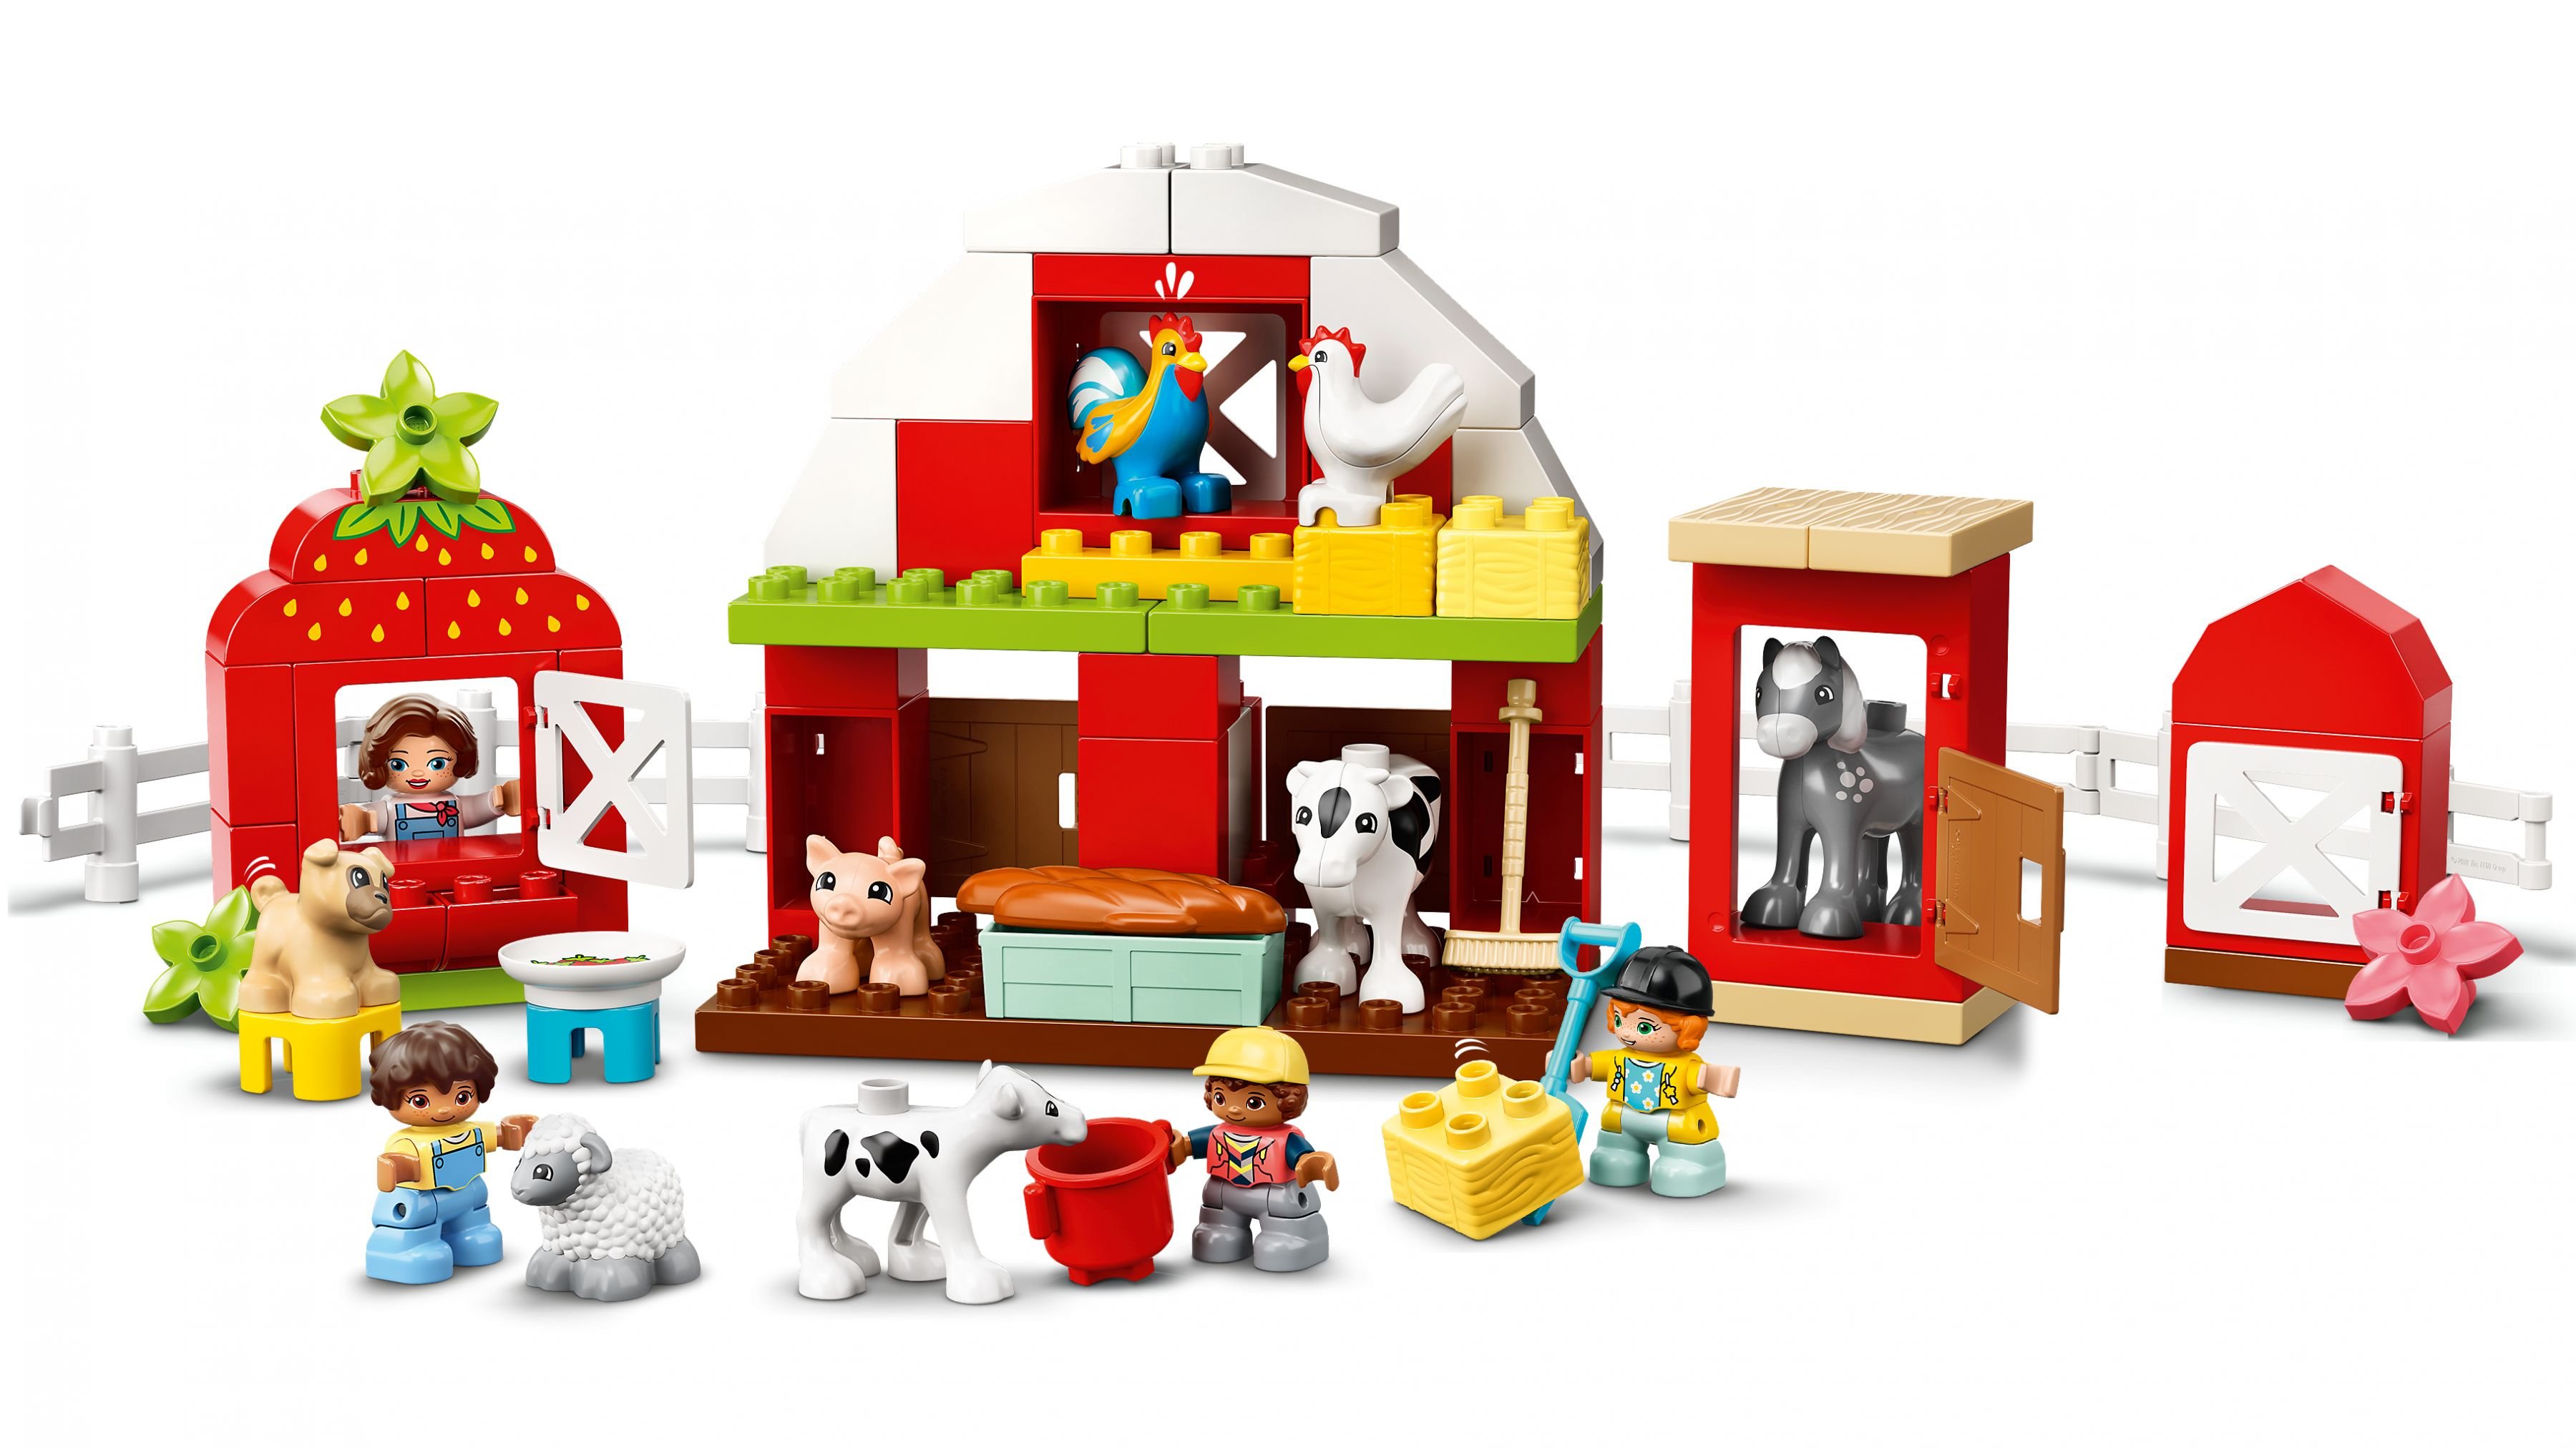 LEGO Duplo 10952 Scheune, Traktor und Tierpflege LEGO_10952_web_sec04_nobg.jpg